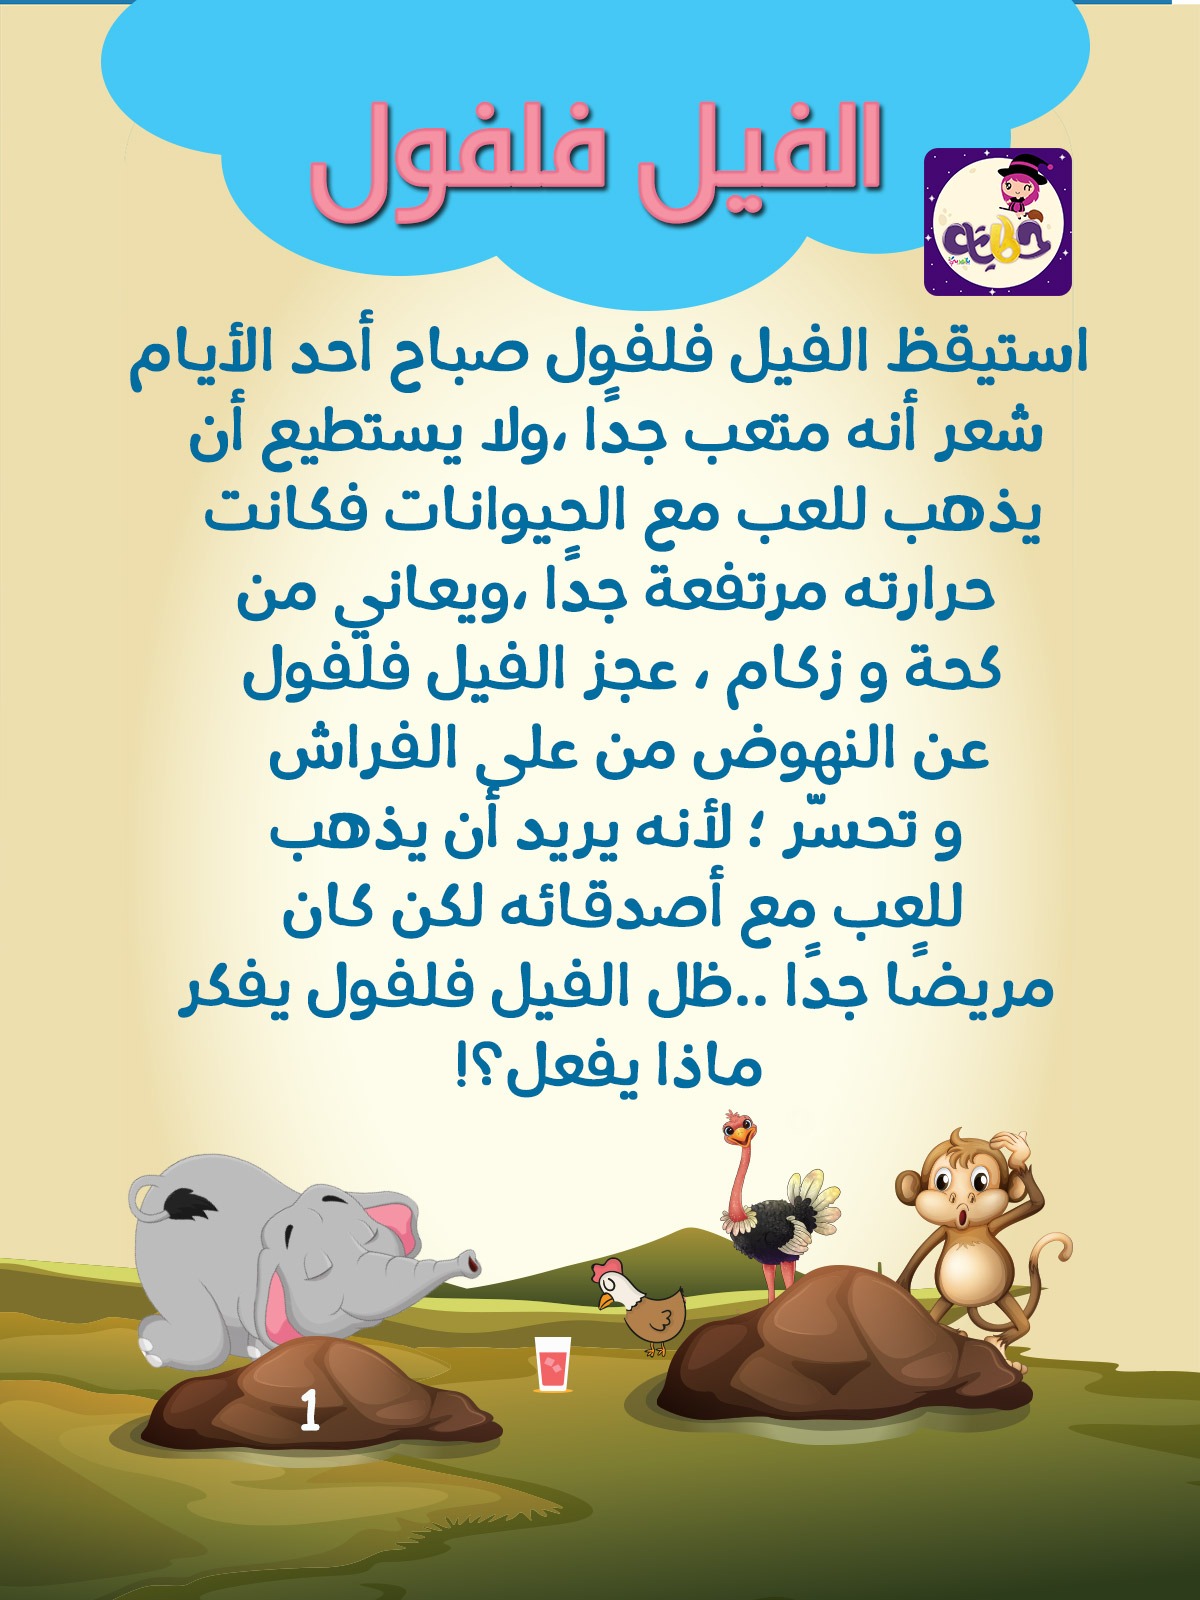 قصة الفيل فلفول ..بتطبيق حكايات بالعربي .. علّم ابنك عيادة المريض وحب